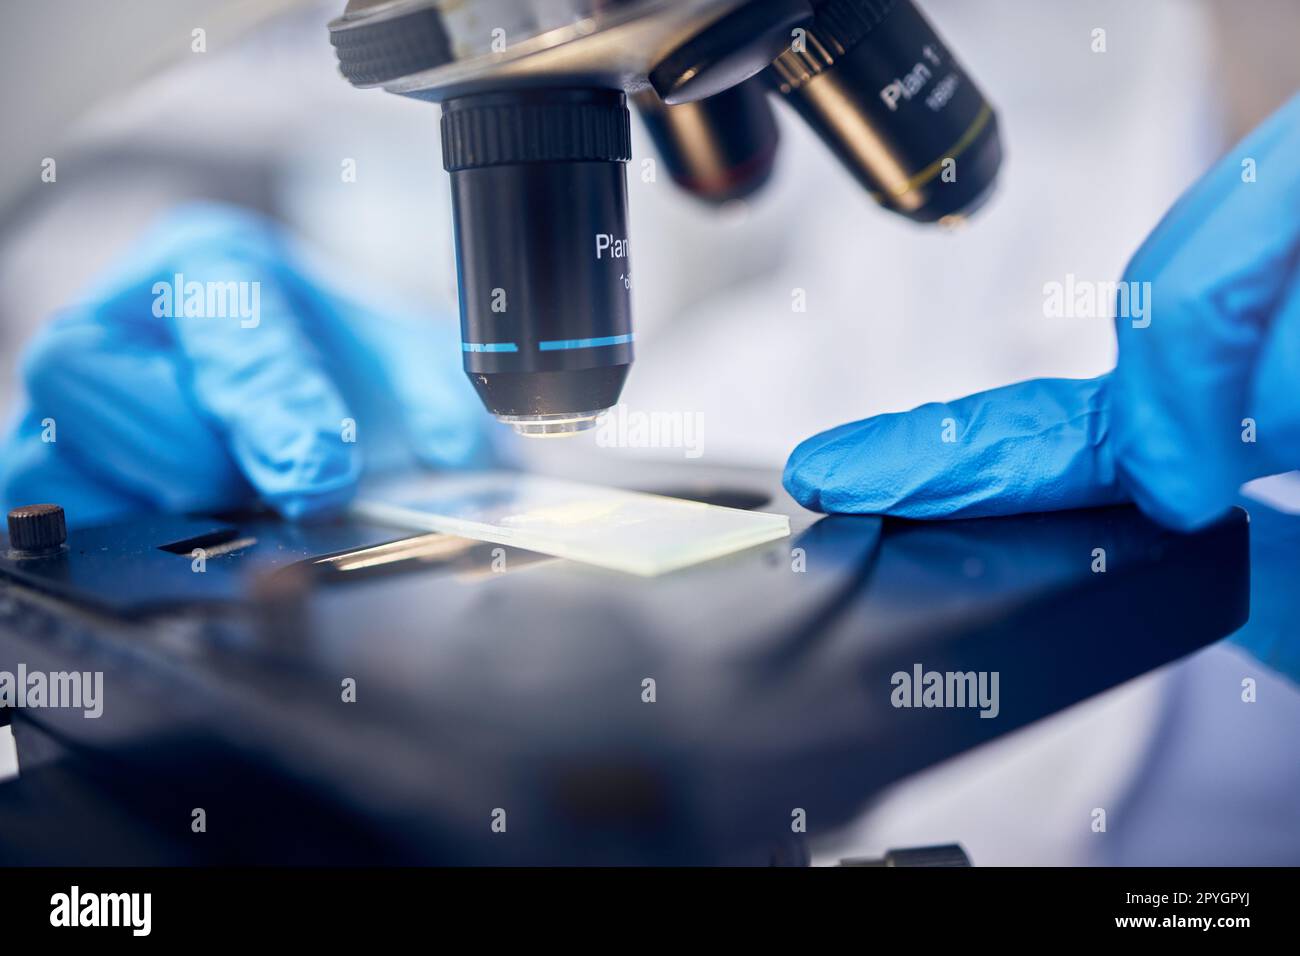 Microscope, bactéries ou mains travaillant dans un laboratoire de science ou de chimie pour l'innovation future dans le domaine de la santé. Recherche, biotechnologie ou scientifique testant des germes, des molécules ou des particules sur une boîte de Pétri Banque D'Images